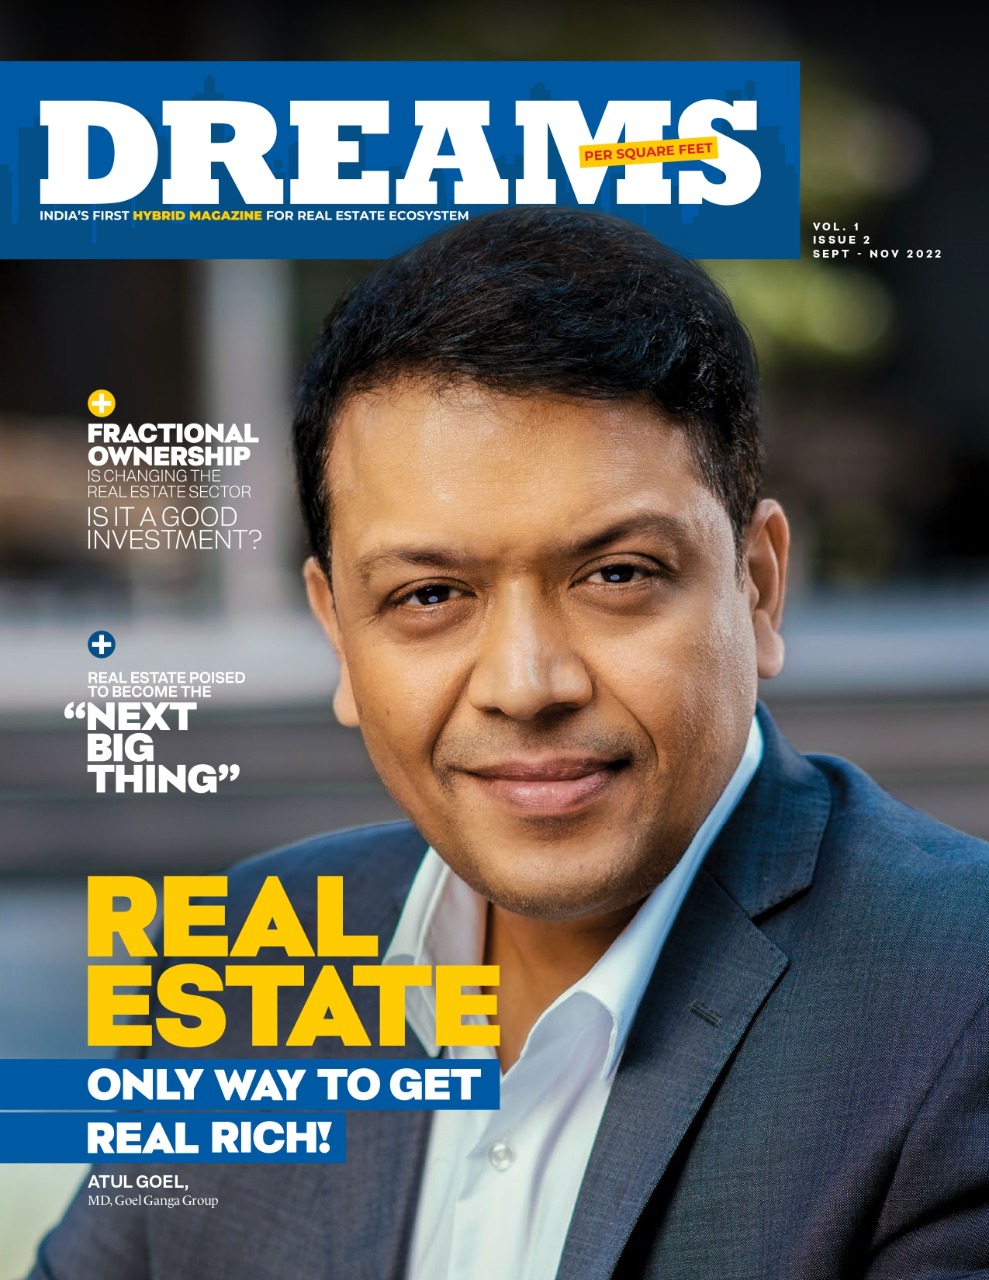 Dreams Per Square Feet magazine second edition